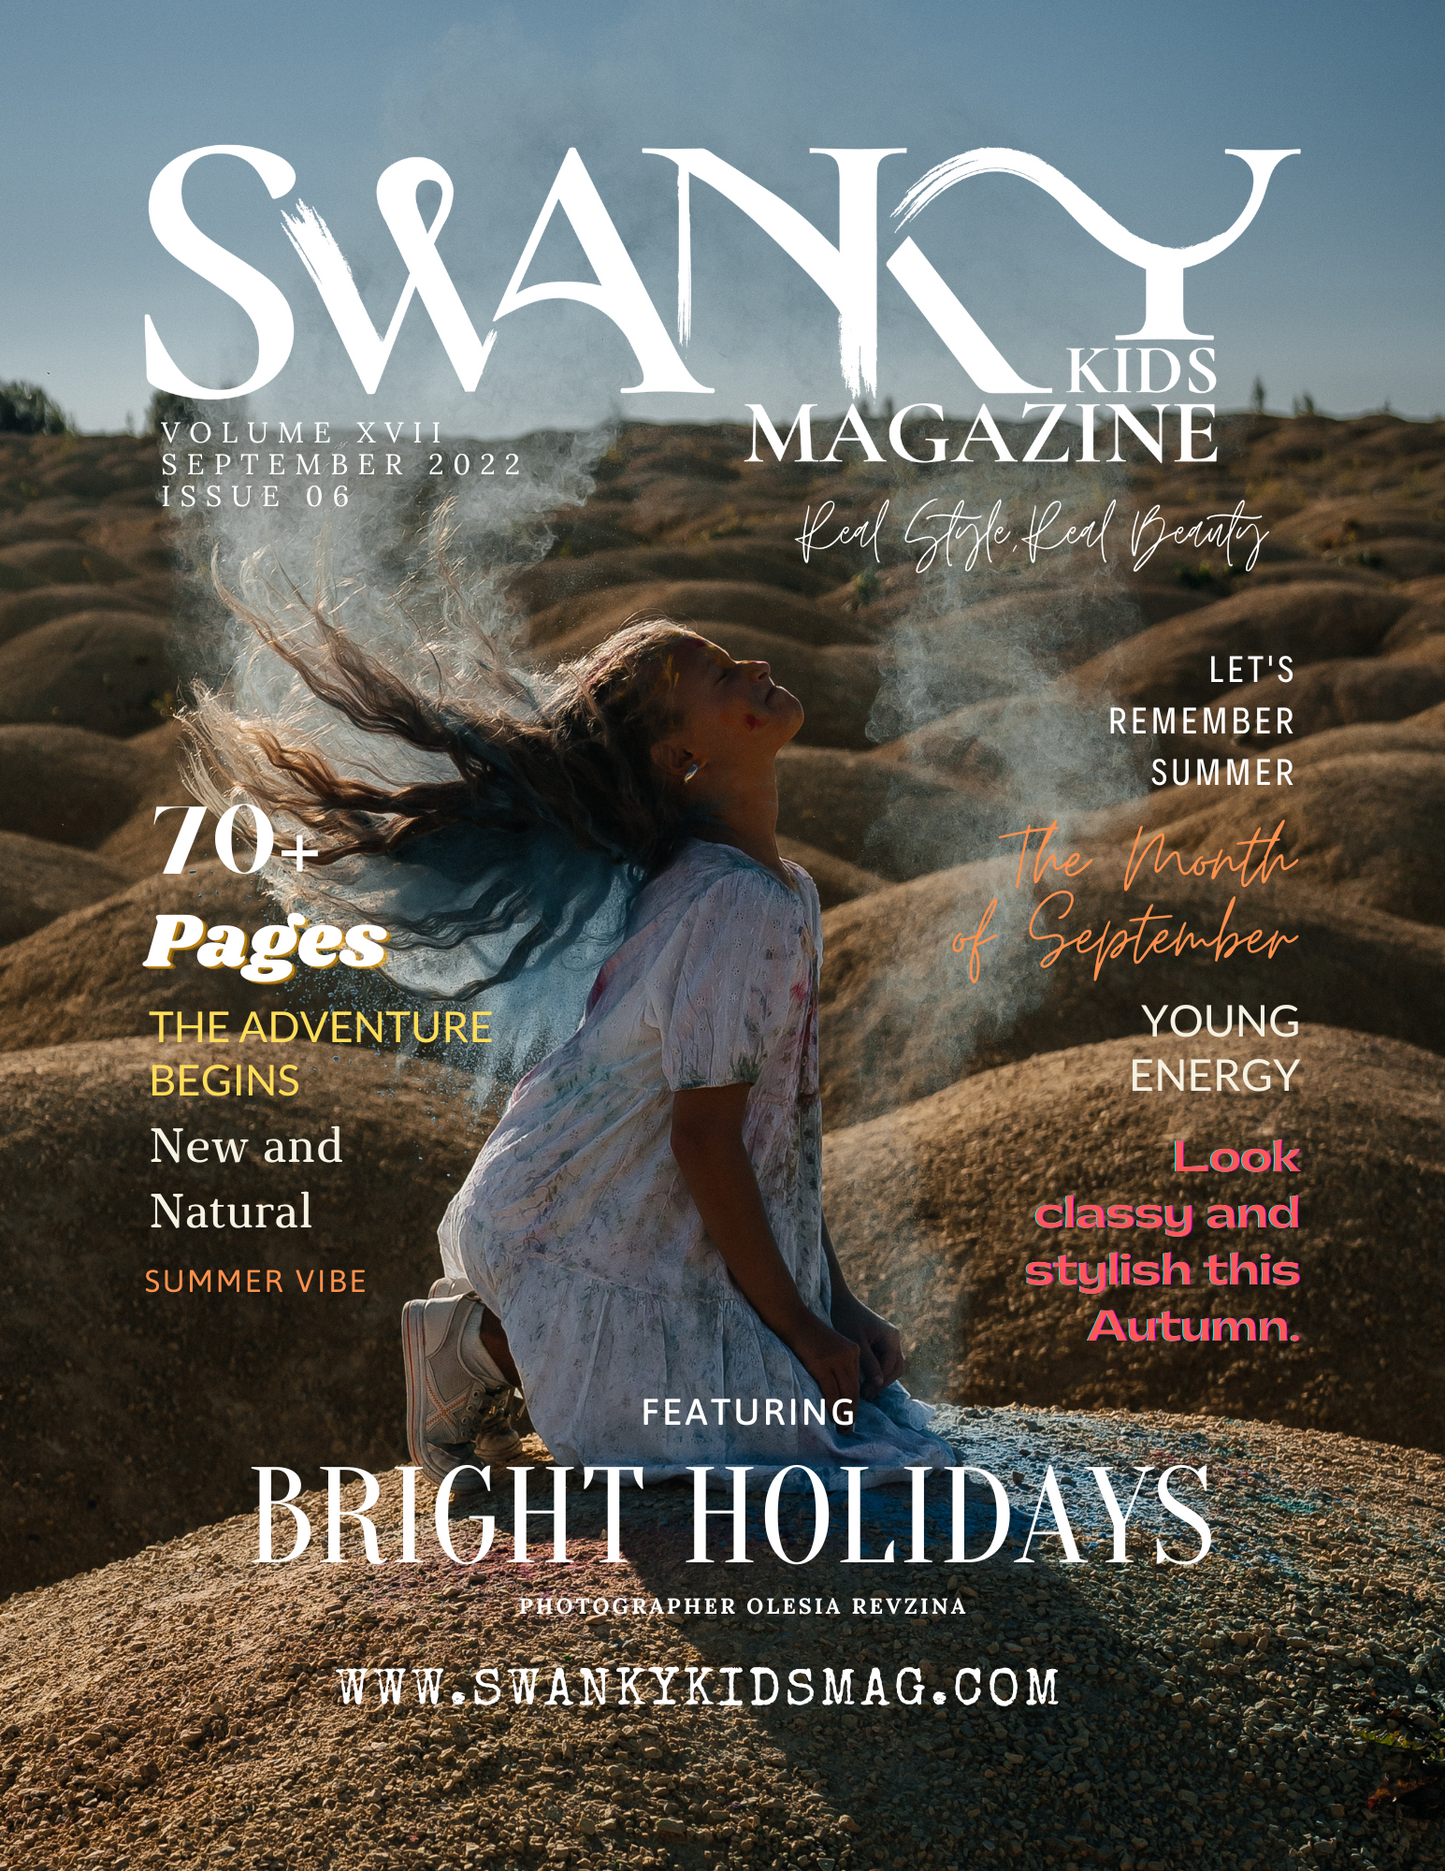 Swanky Kids Magazine September 2022 VOL XXII Issue 06